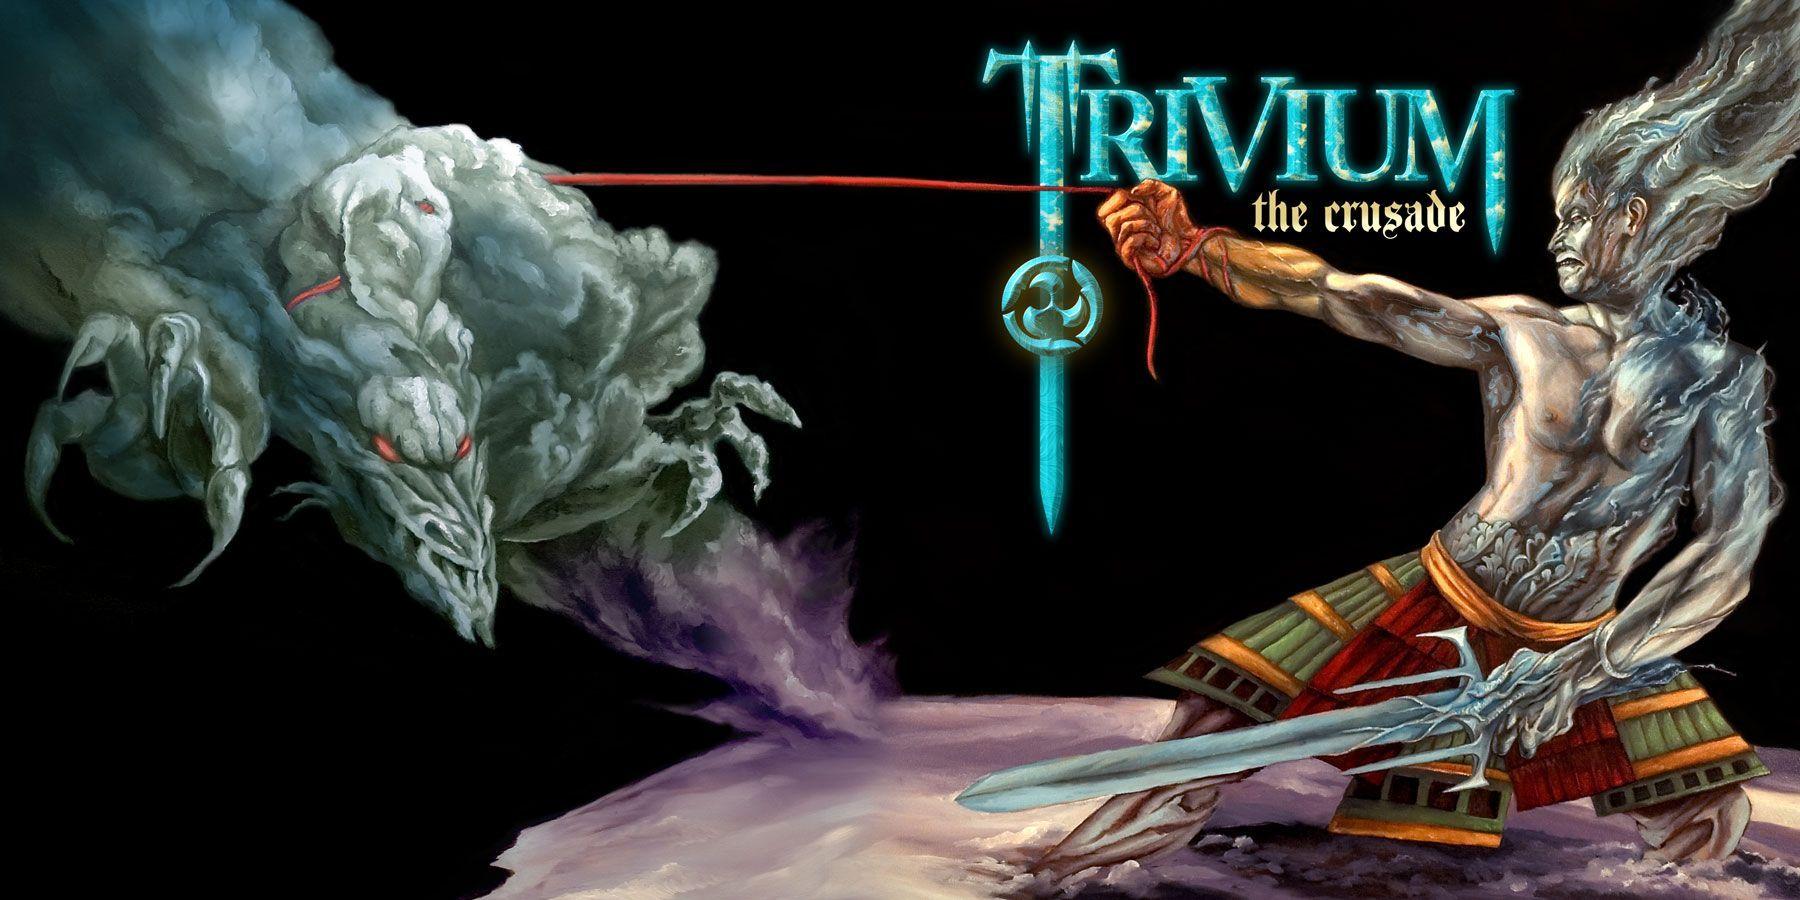 Trivium Album art Crusade. mûsic